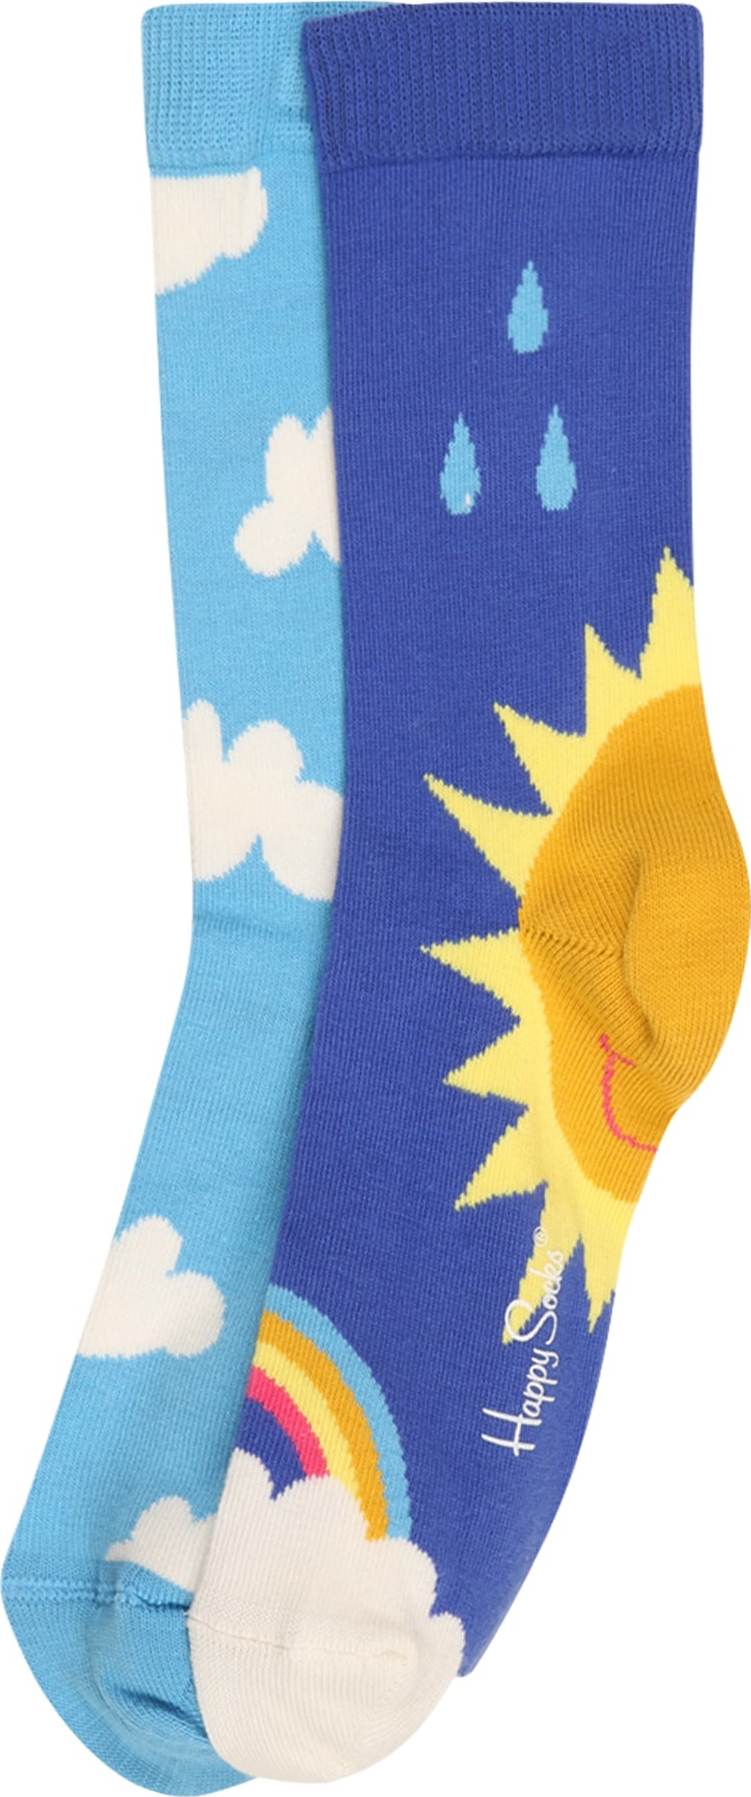 Happy Socks Ponožky 'After Rain' královská modrá / nebeská modř / zlatě žlutá / limone / bílá